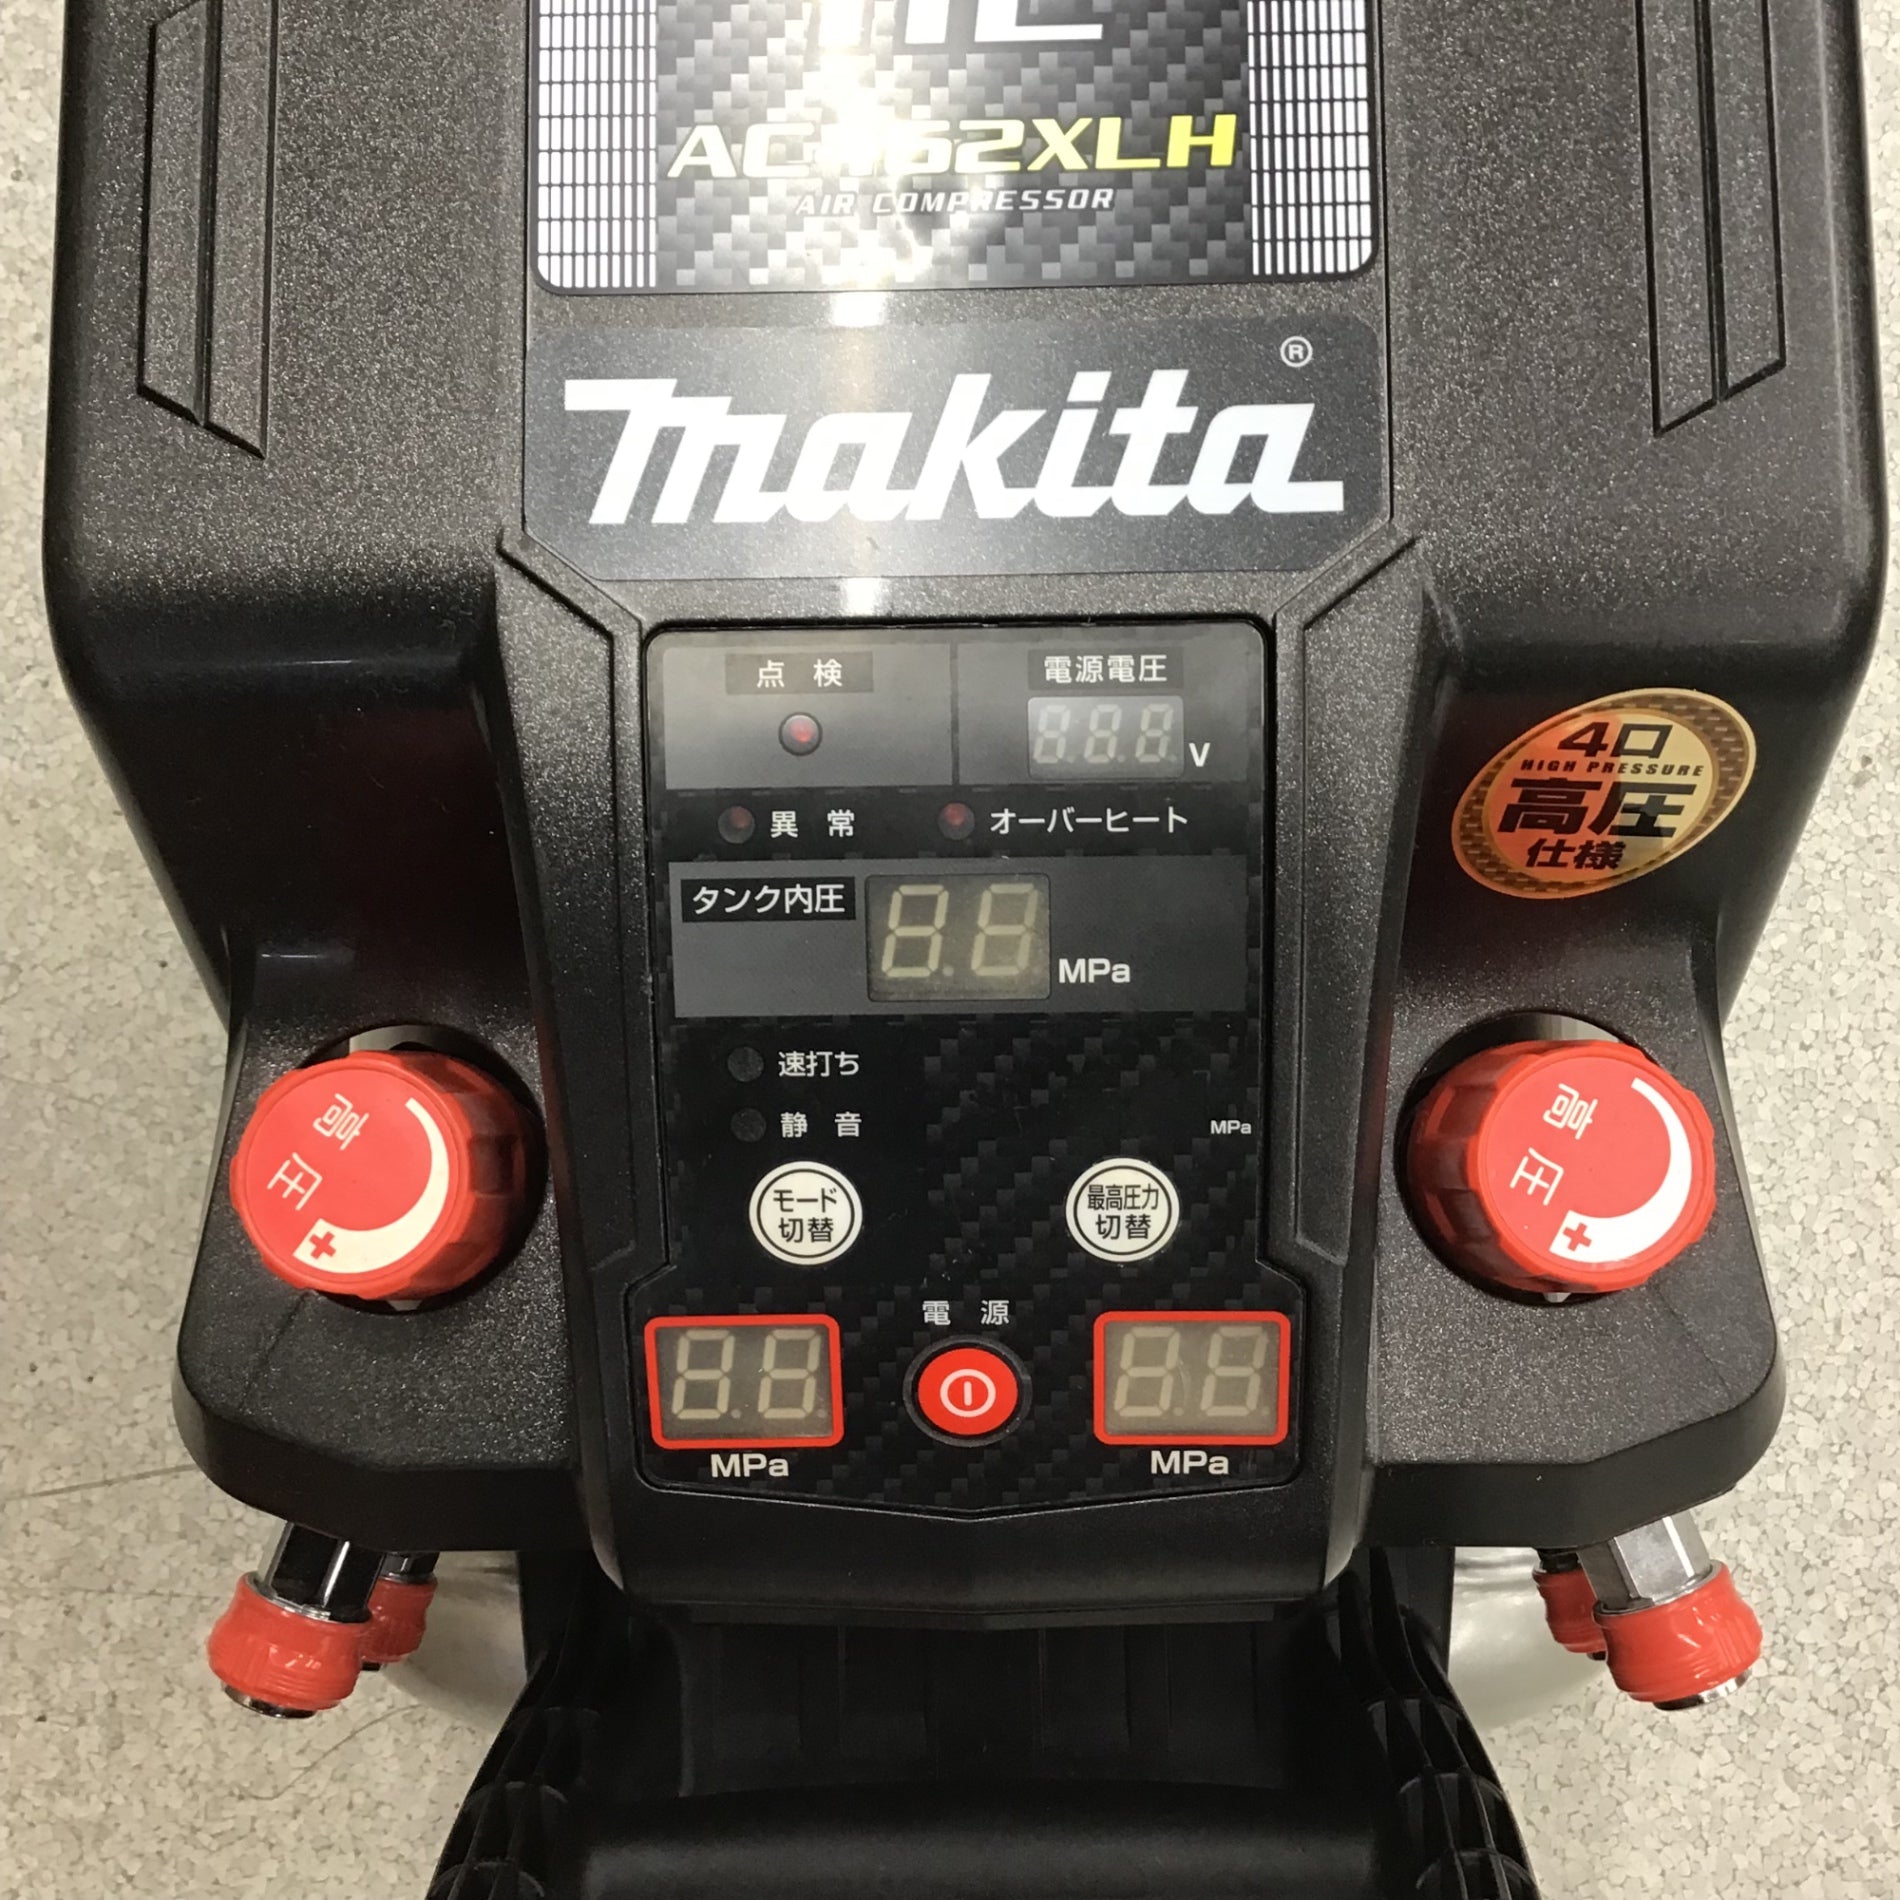 ☆マキタ(makita) 高圧専用エアコンプレッサー AC462XLHB【八潮店 